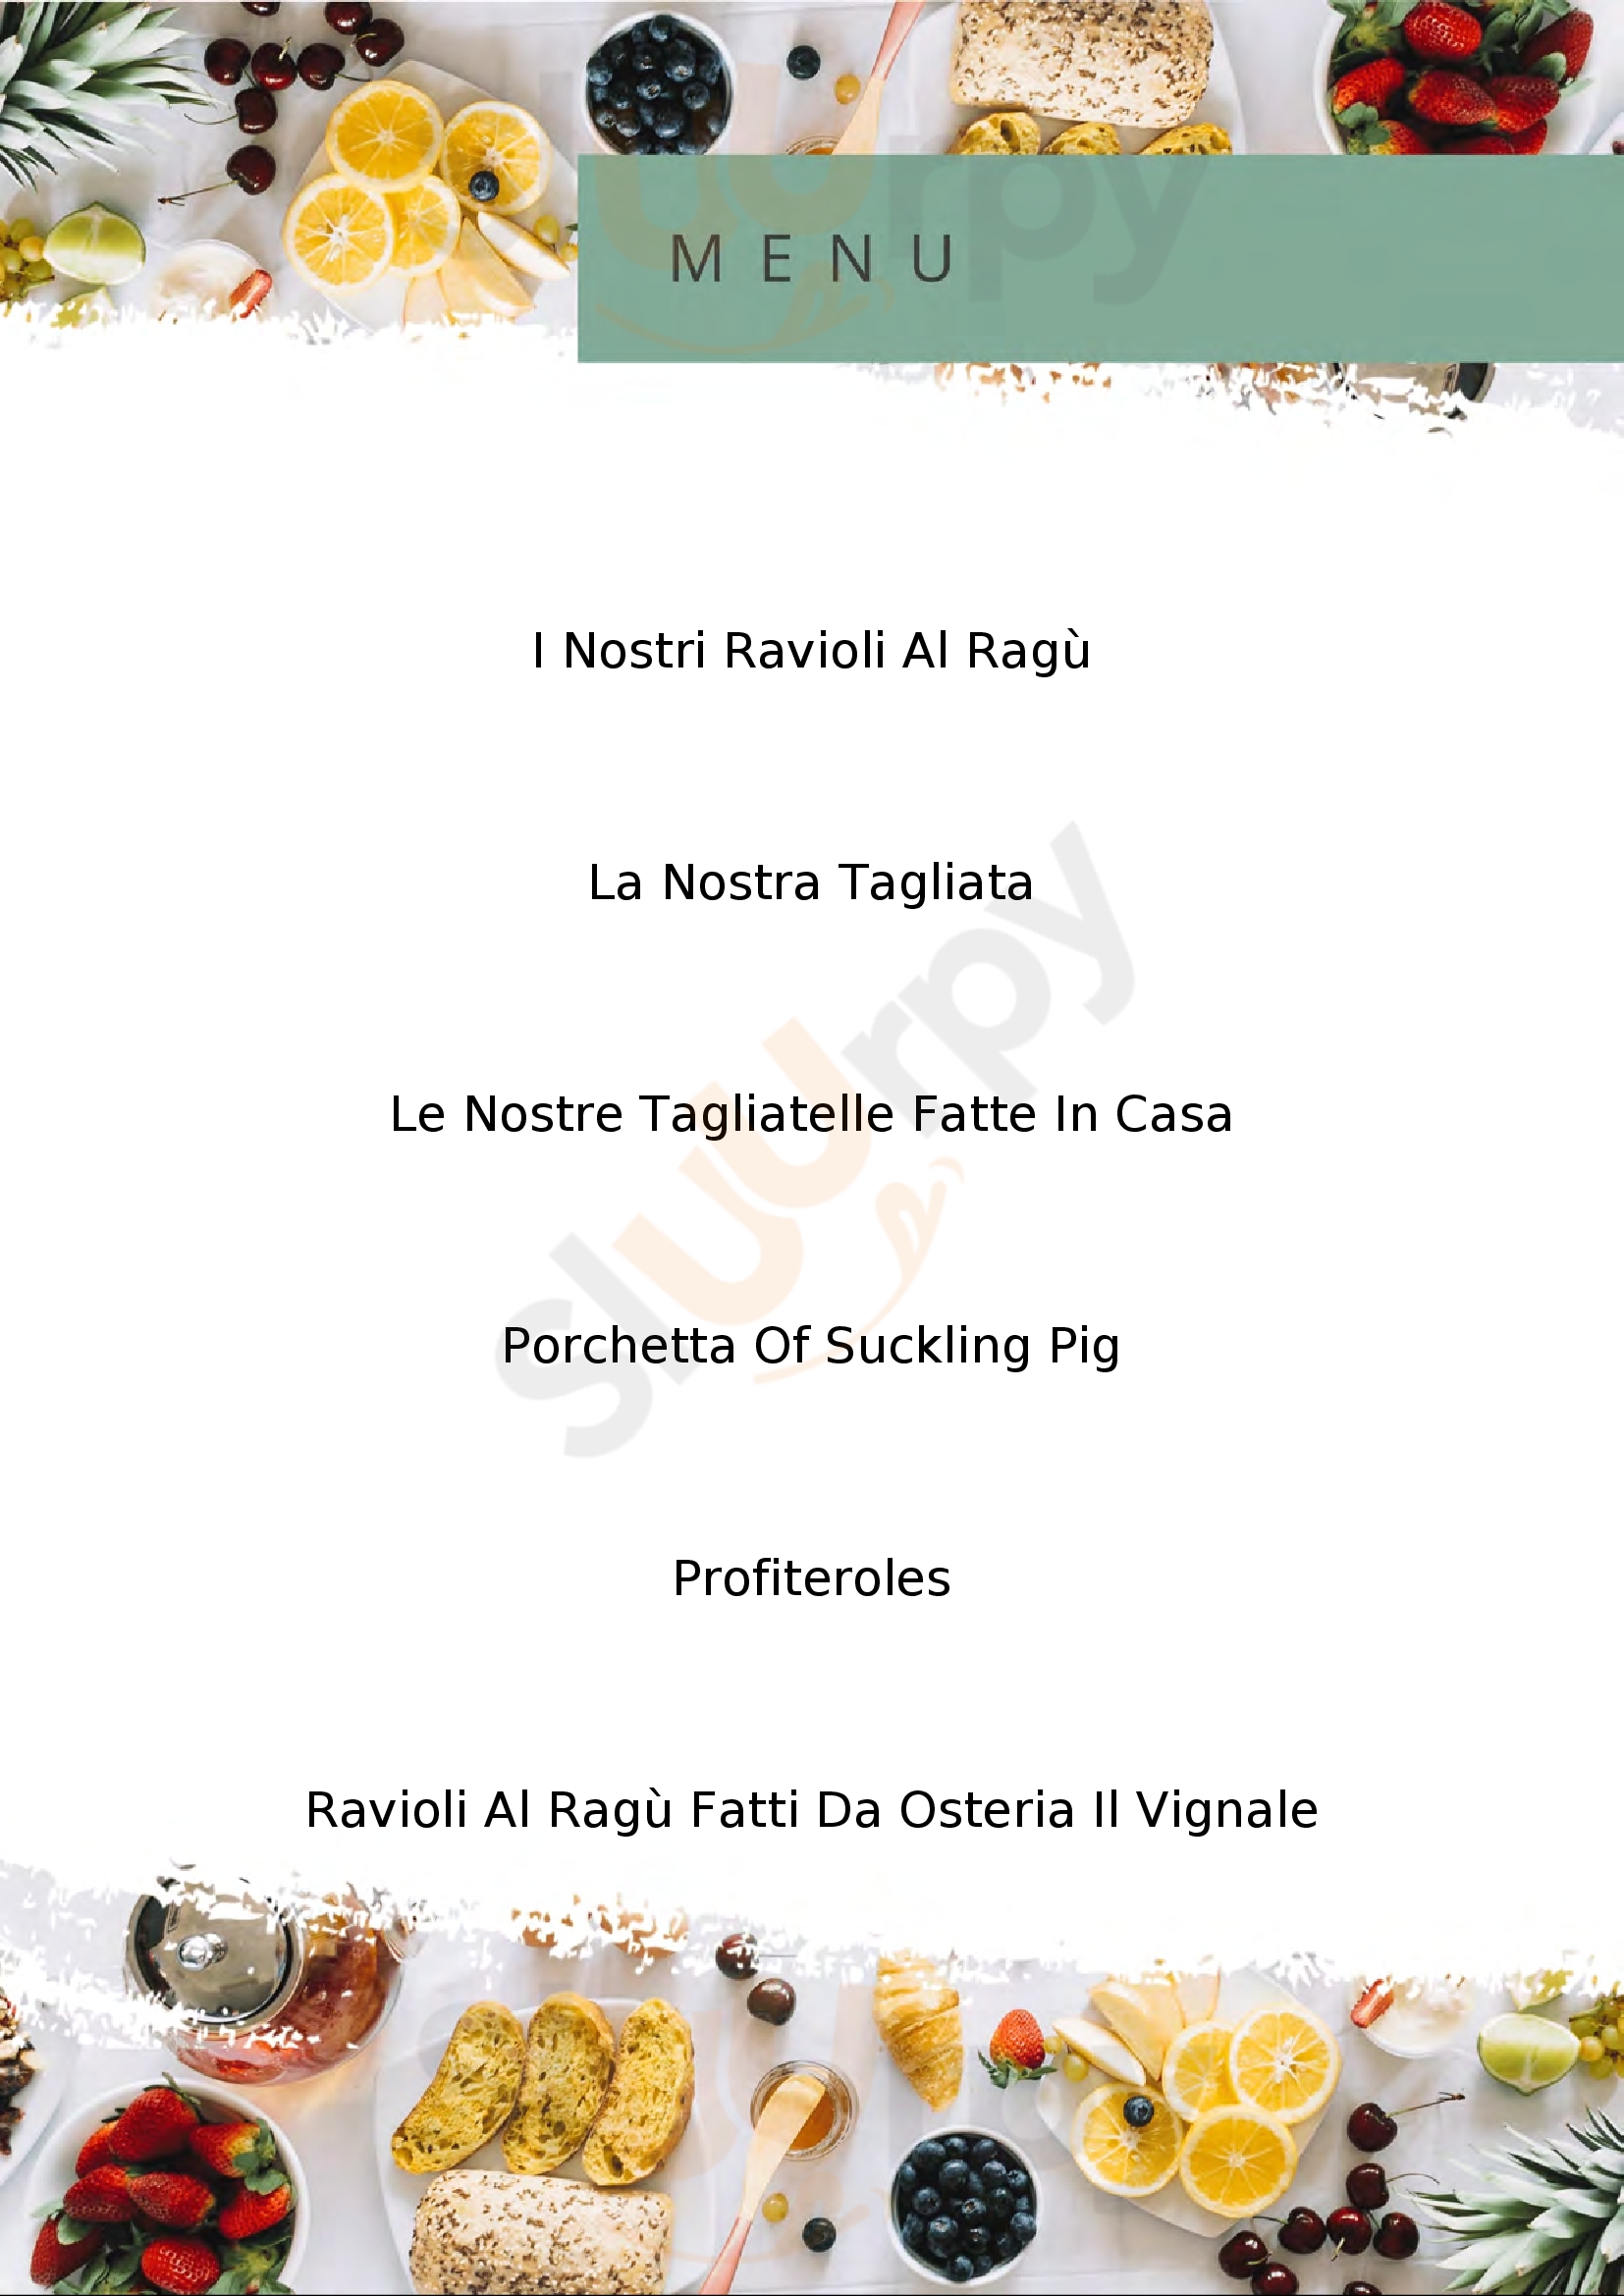 Osteria Il Vignale La Spezia menù 1 pagina